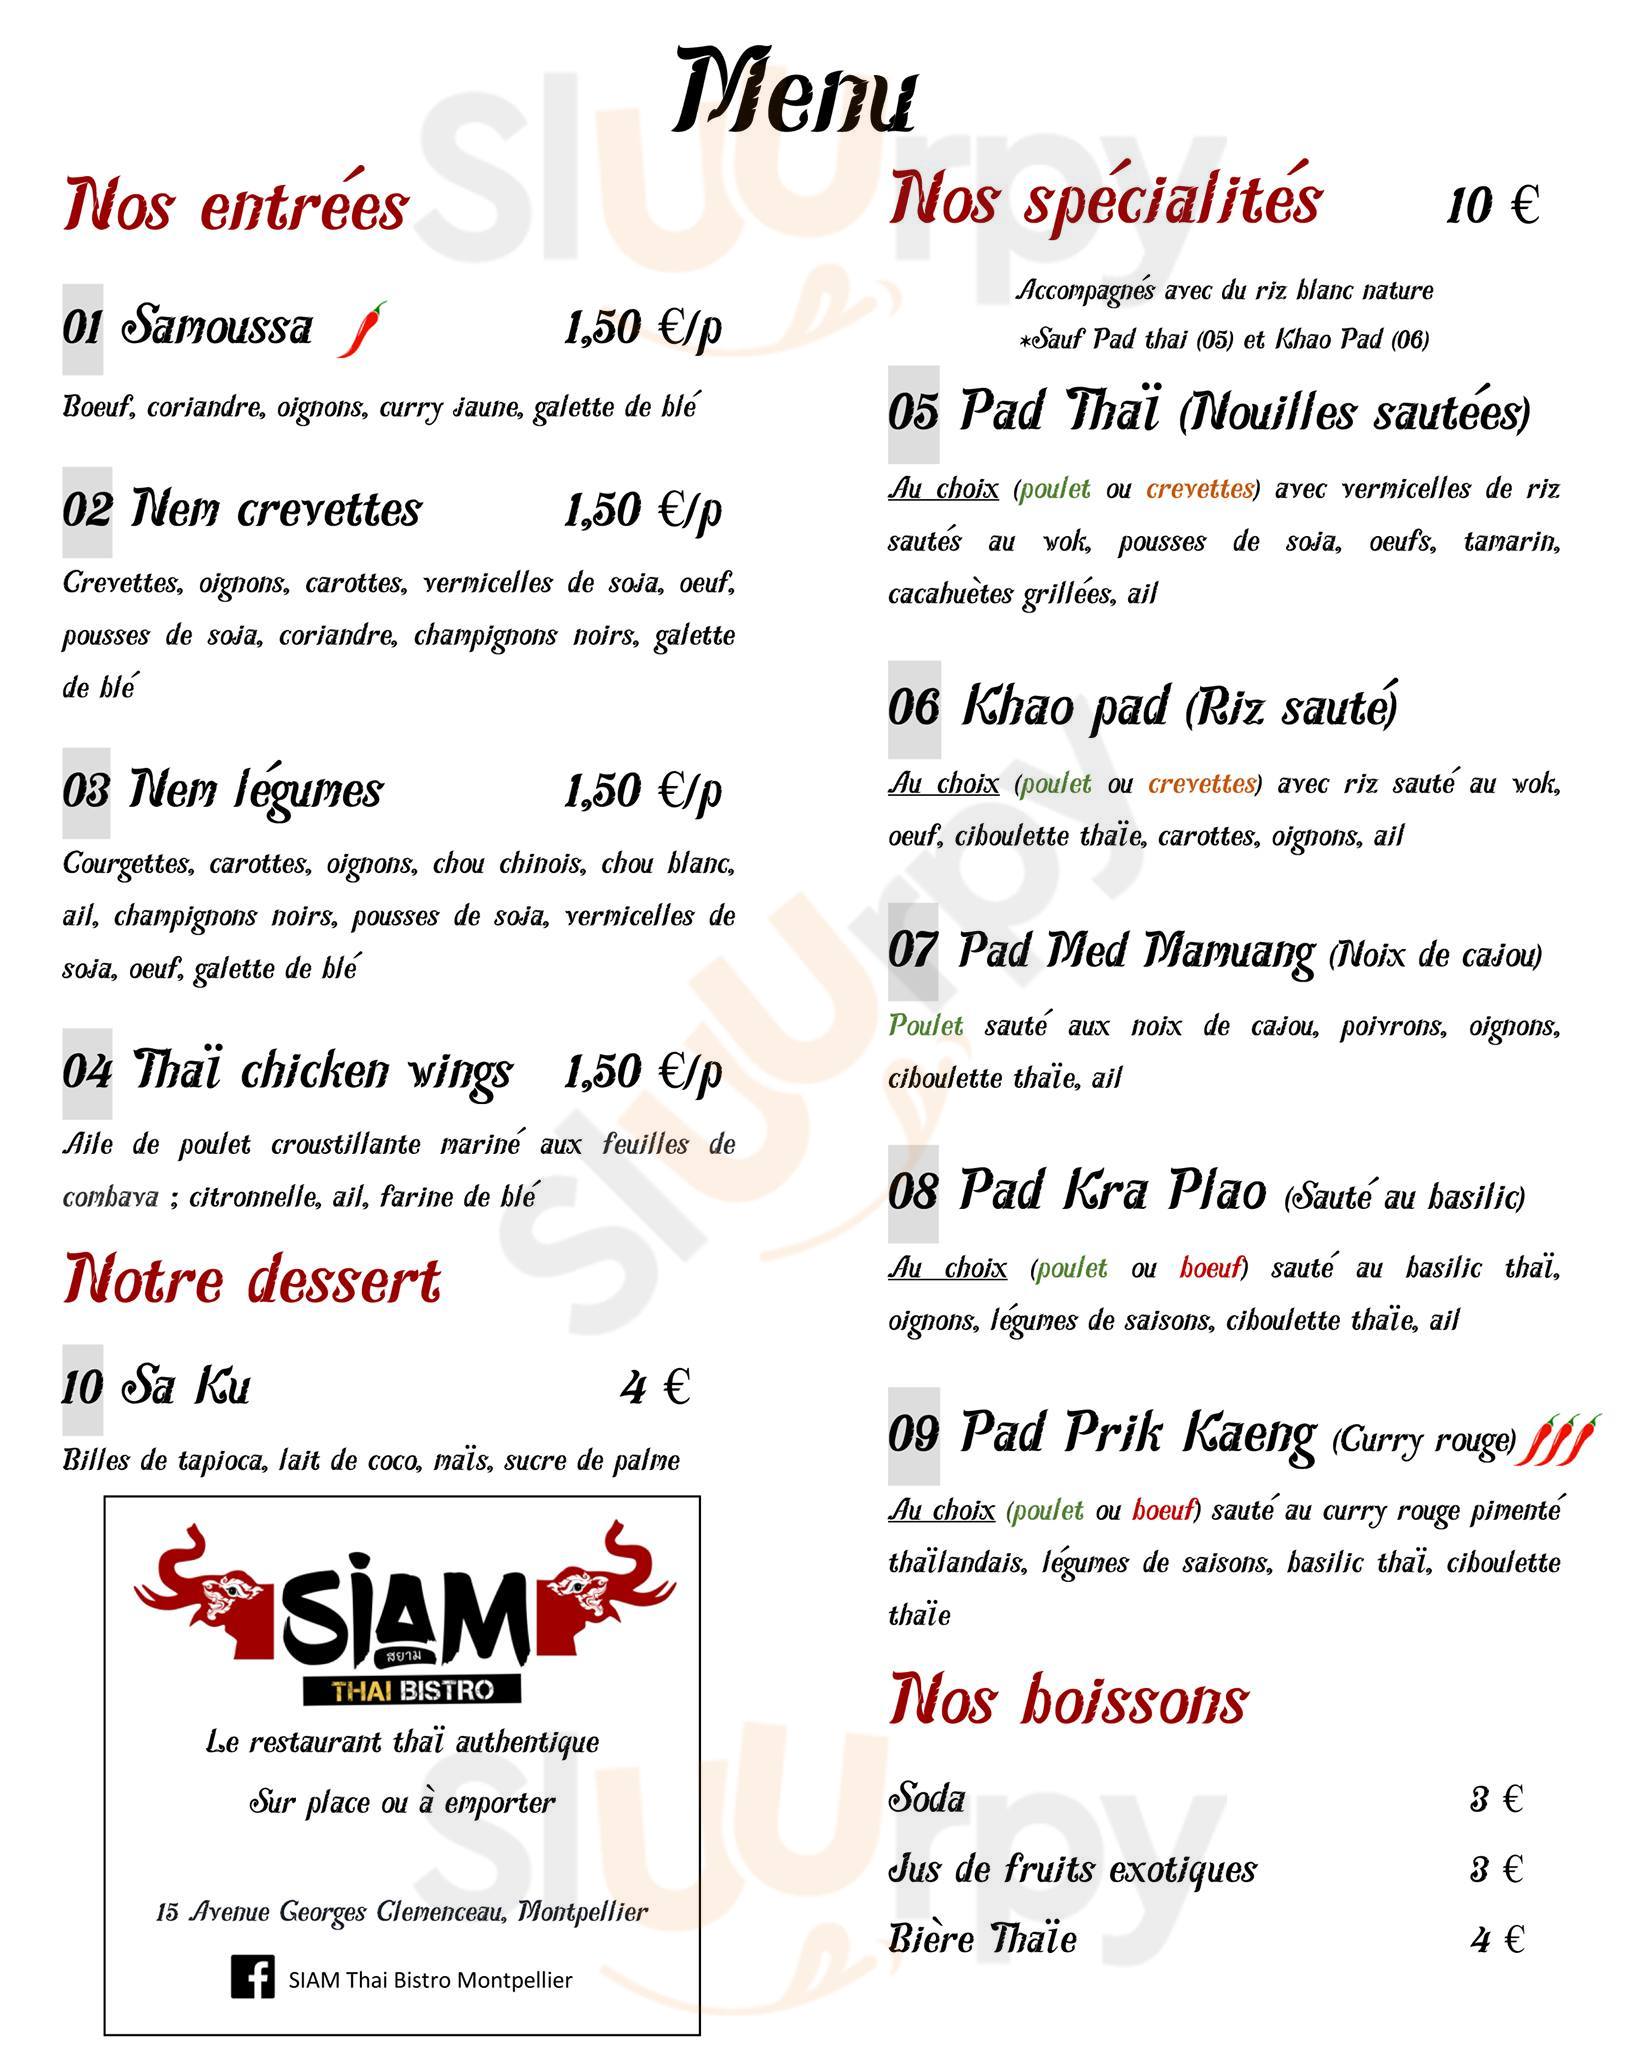 Siam Thai Bistro Montpellier Menu - 1